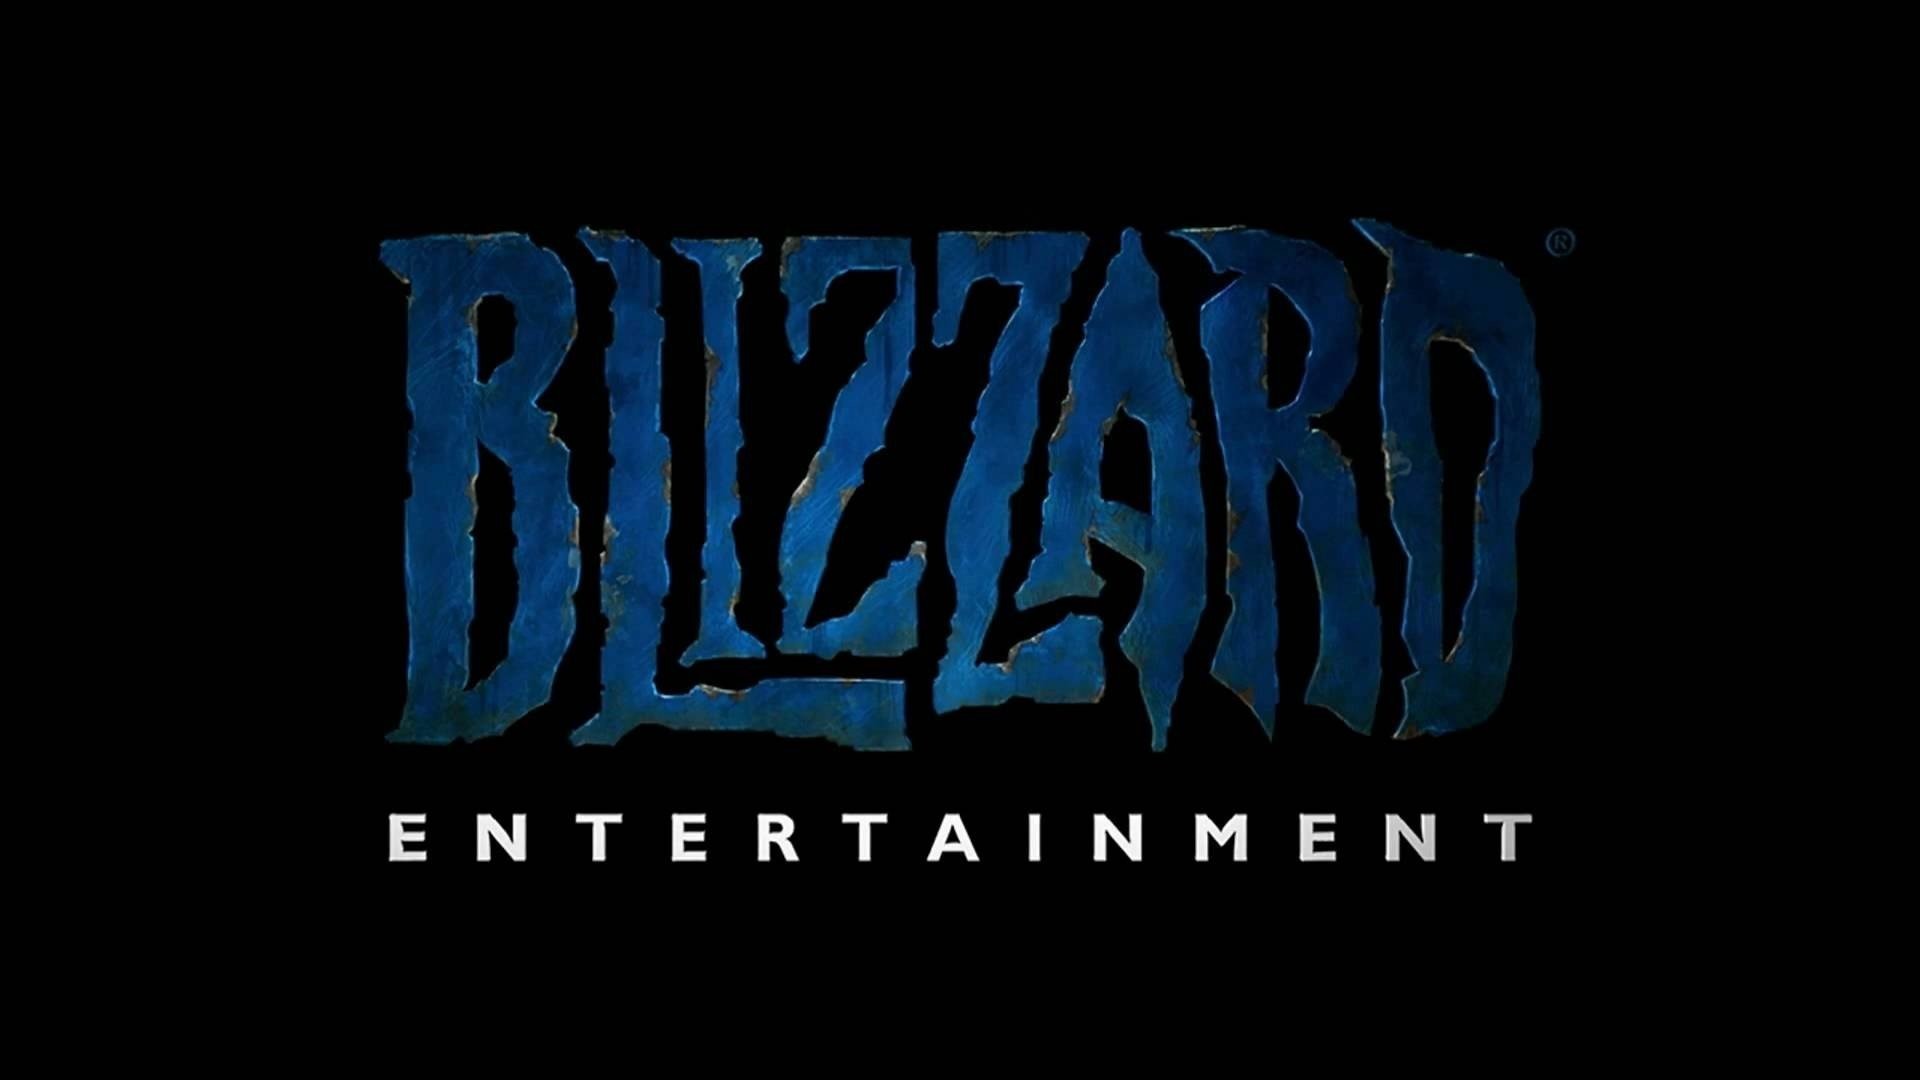 Blizzard Entertainment เข้าซื้อกิจการ Proletariat ผู้พัฒนาเกม Spellbreak